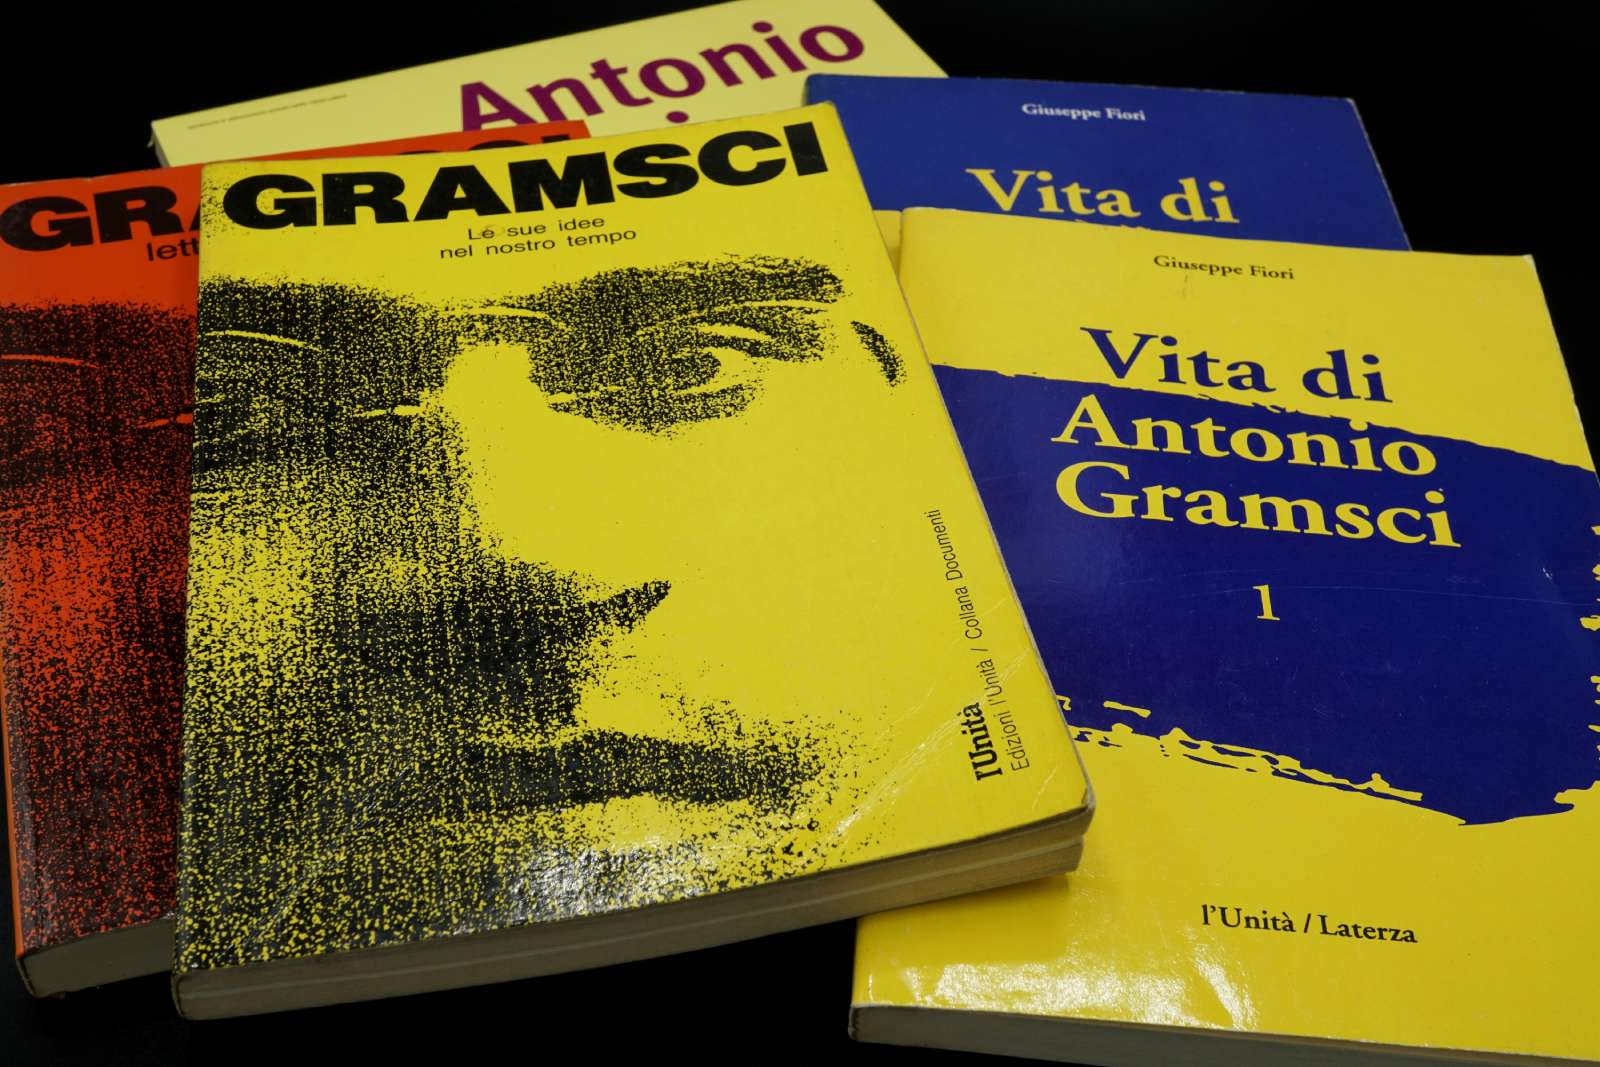 Gramsci e il gramscismo